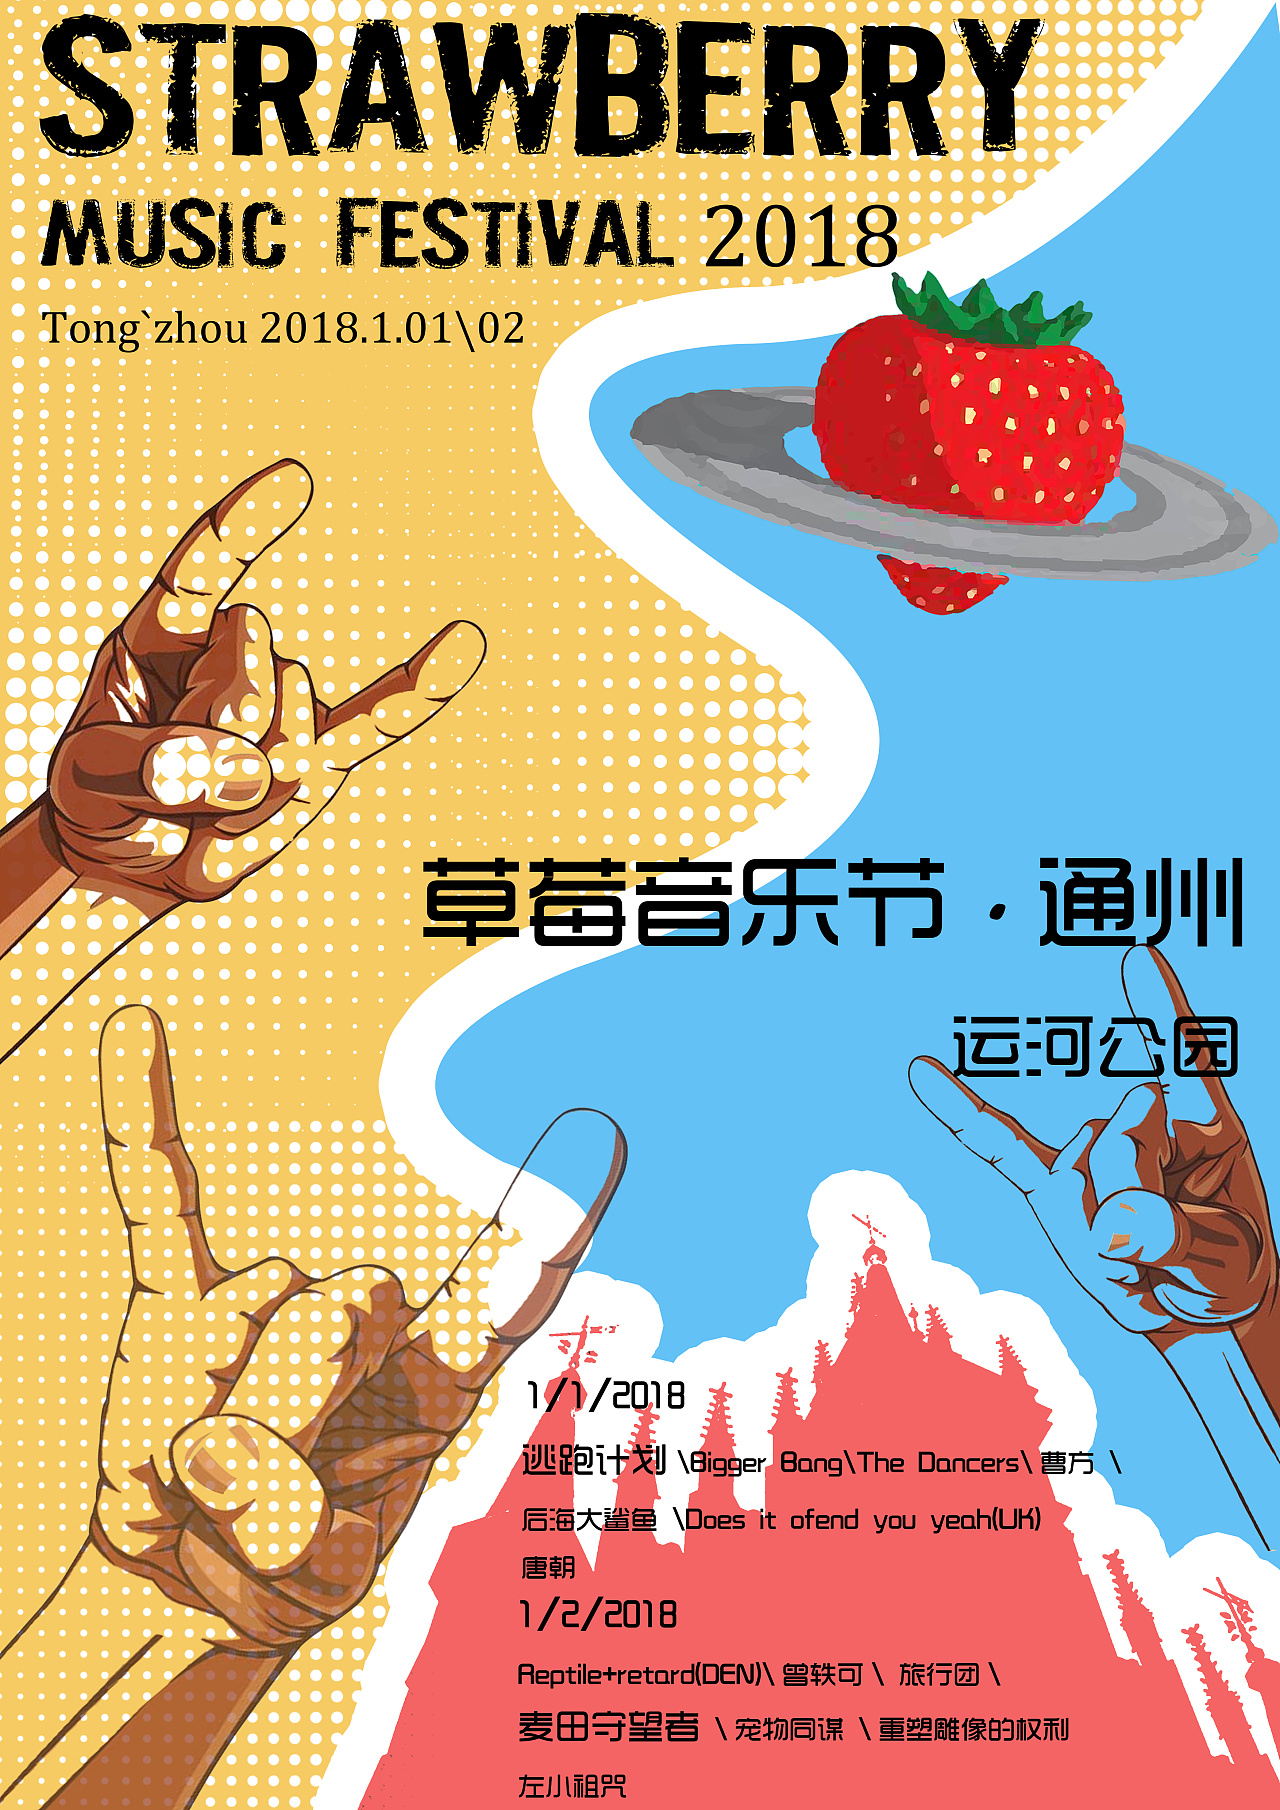 《乐队的夏天》唱响草莓音乐节-三湘都市报